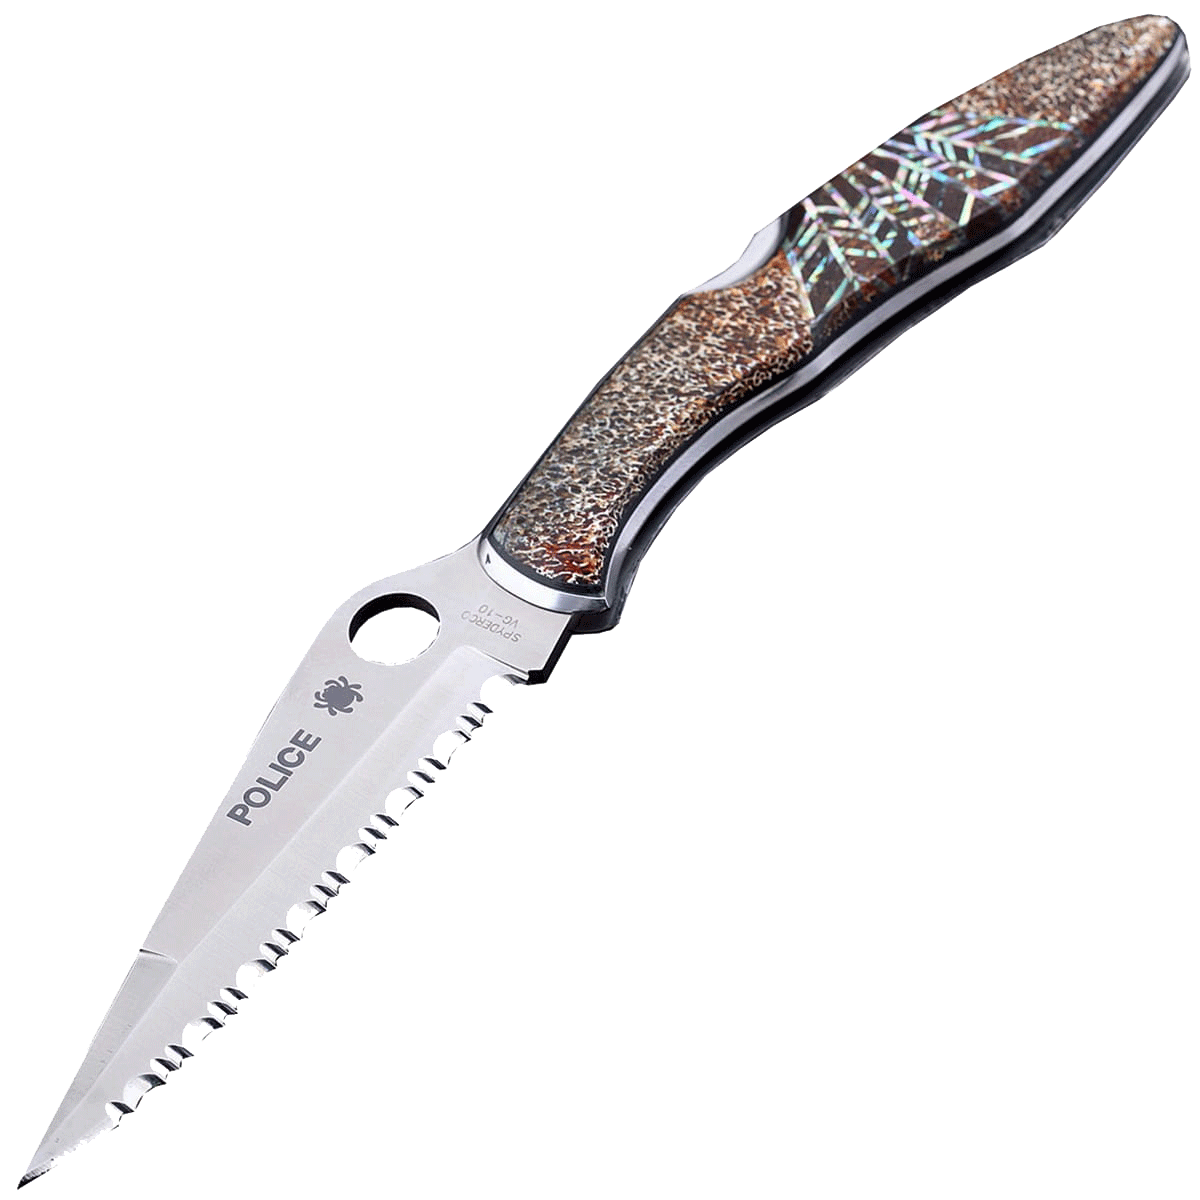 Коллекционный складной нож Santa Fe Spyderco Police Serrated, сталь VG-10, рукоять сталь с накладкой из тигрового коралла/абалона - фото 1